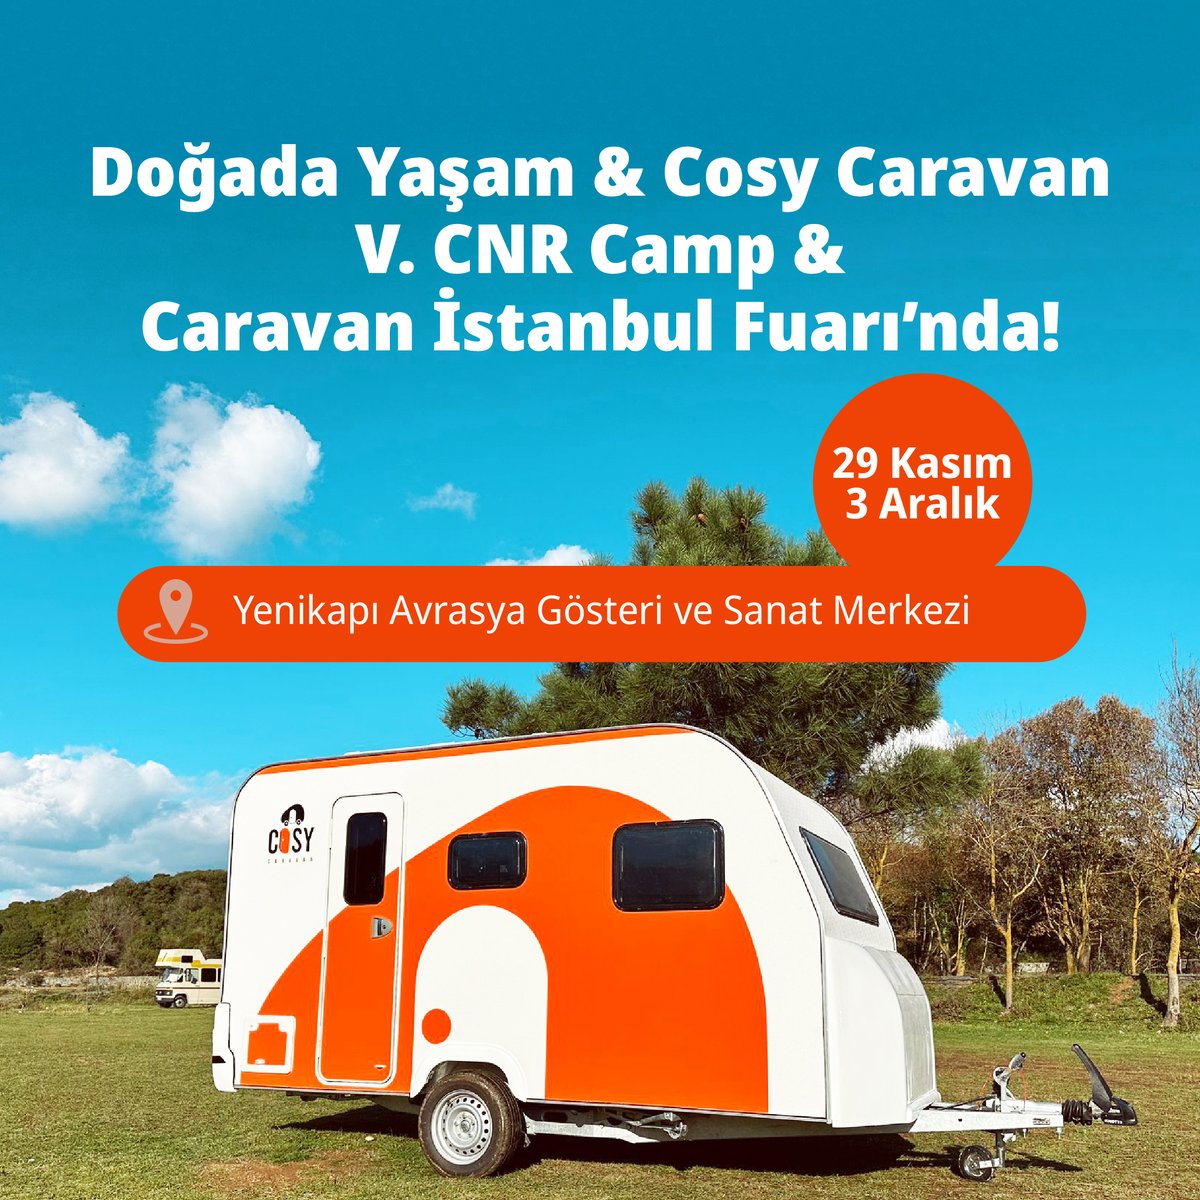 📢 Yeni markamız Cosy Caravan ile birlikte 29 Kasım - 03 Aralık tarihleri arasında gerçekleşecek CNR Camp & Caravan İstanbul Fuarı’ndayız! 🙌Tüm doğada yaşam, kampçılık ve karavan tutkunlarını standımıza bekleriz. 🚐🏕️🌿